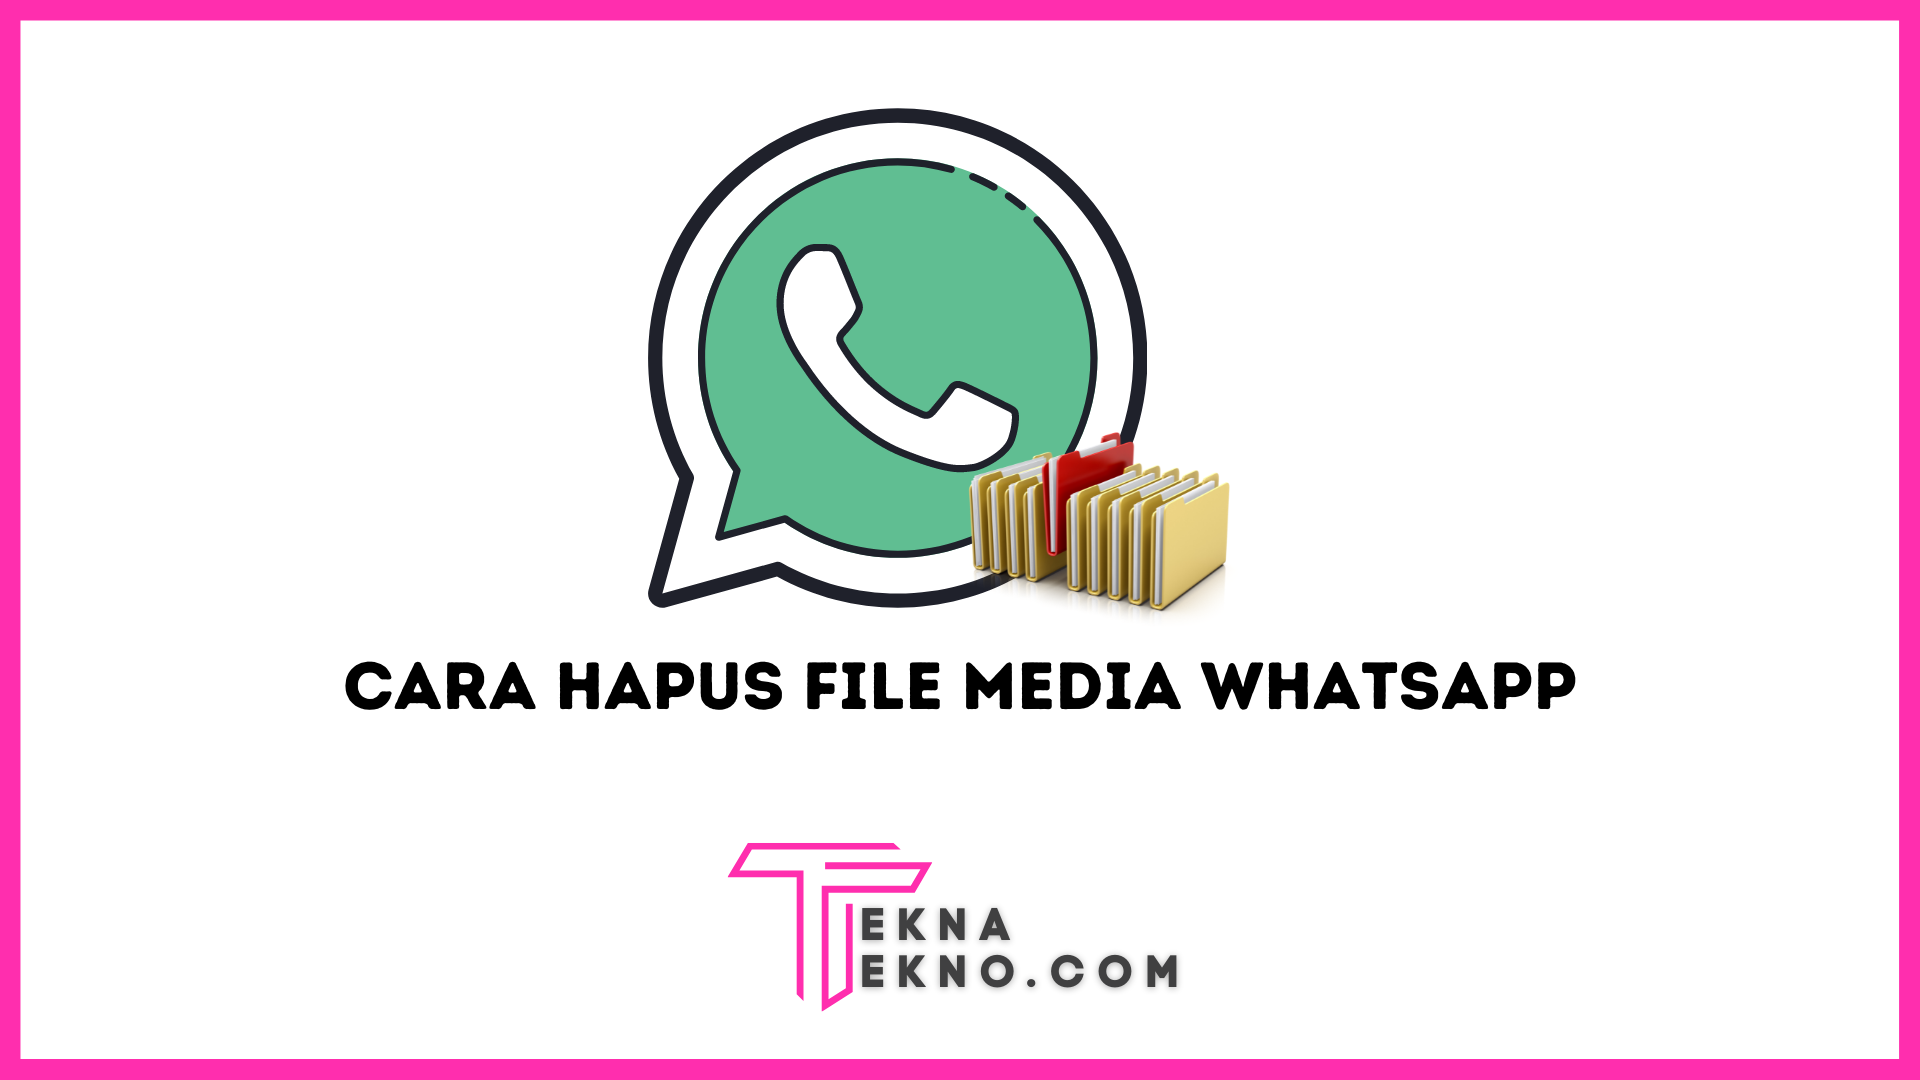 Cara Menghapus File Media Whatsapp Agar Memori Longgar